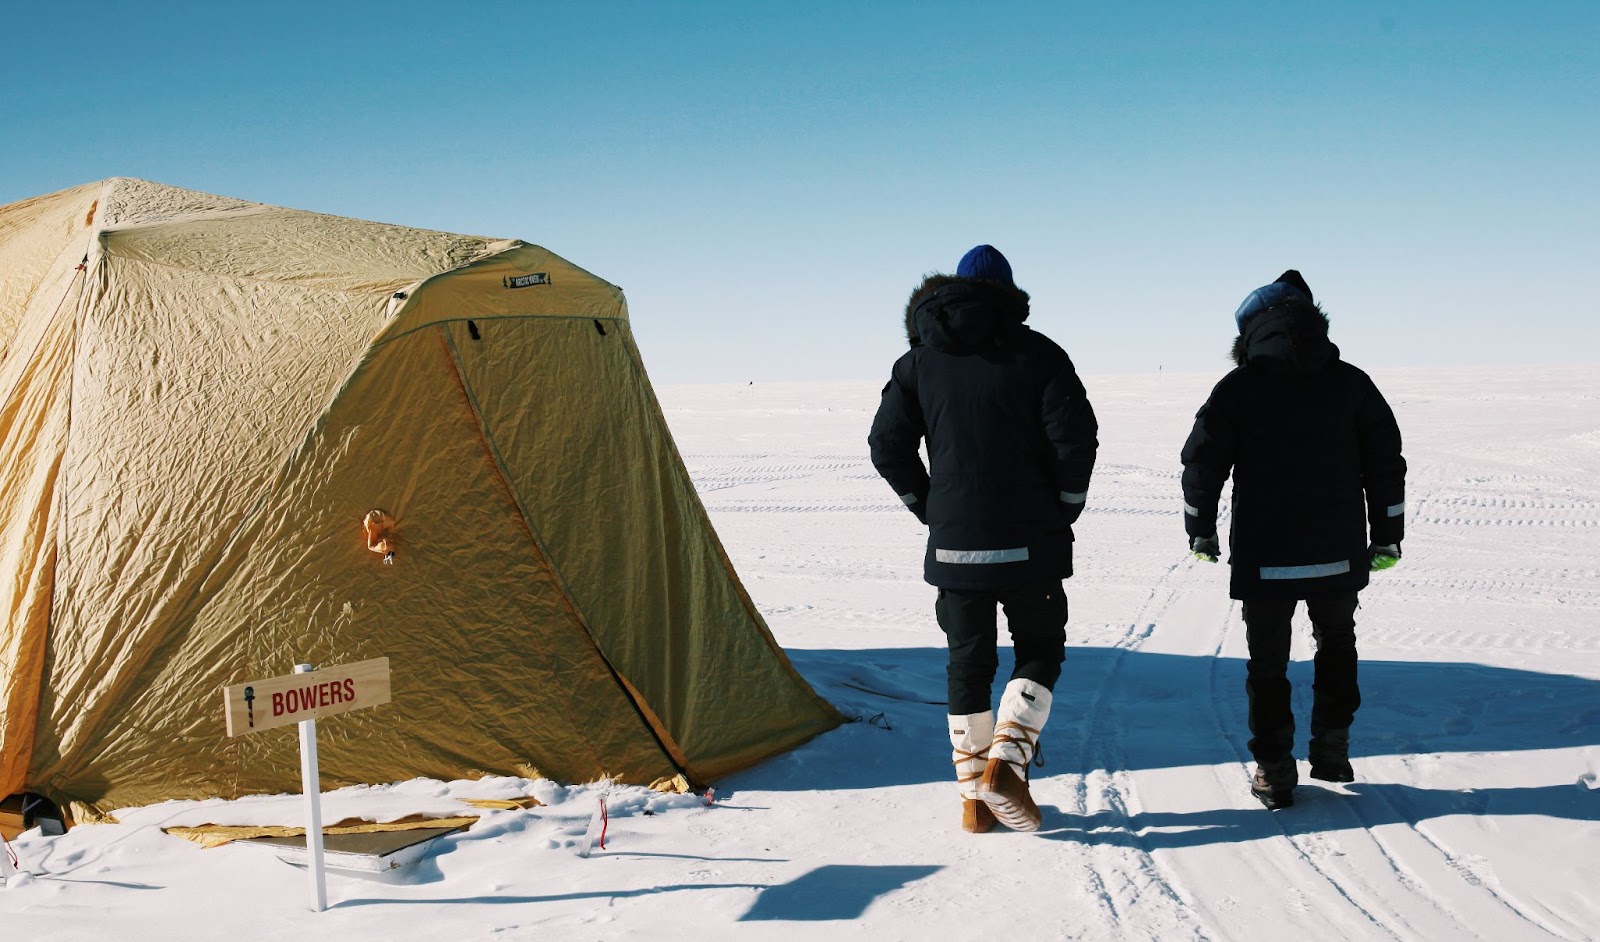 Лагерь на Южном полюсе со станцией Амундсен-Скотт на заднем плане.